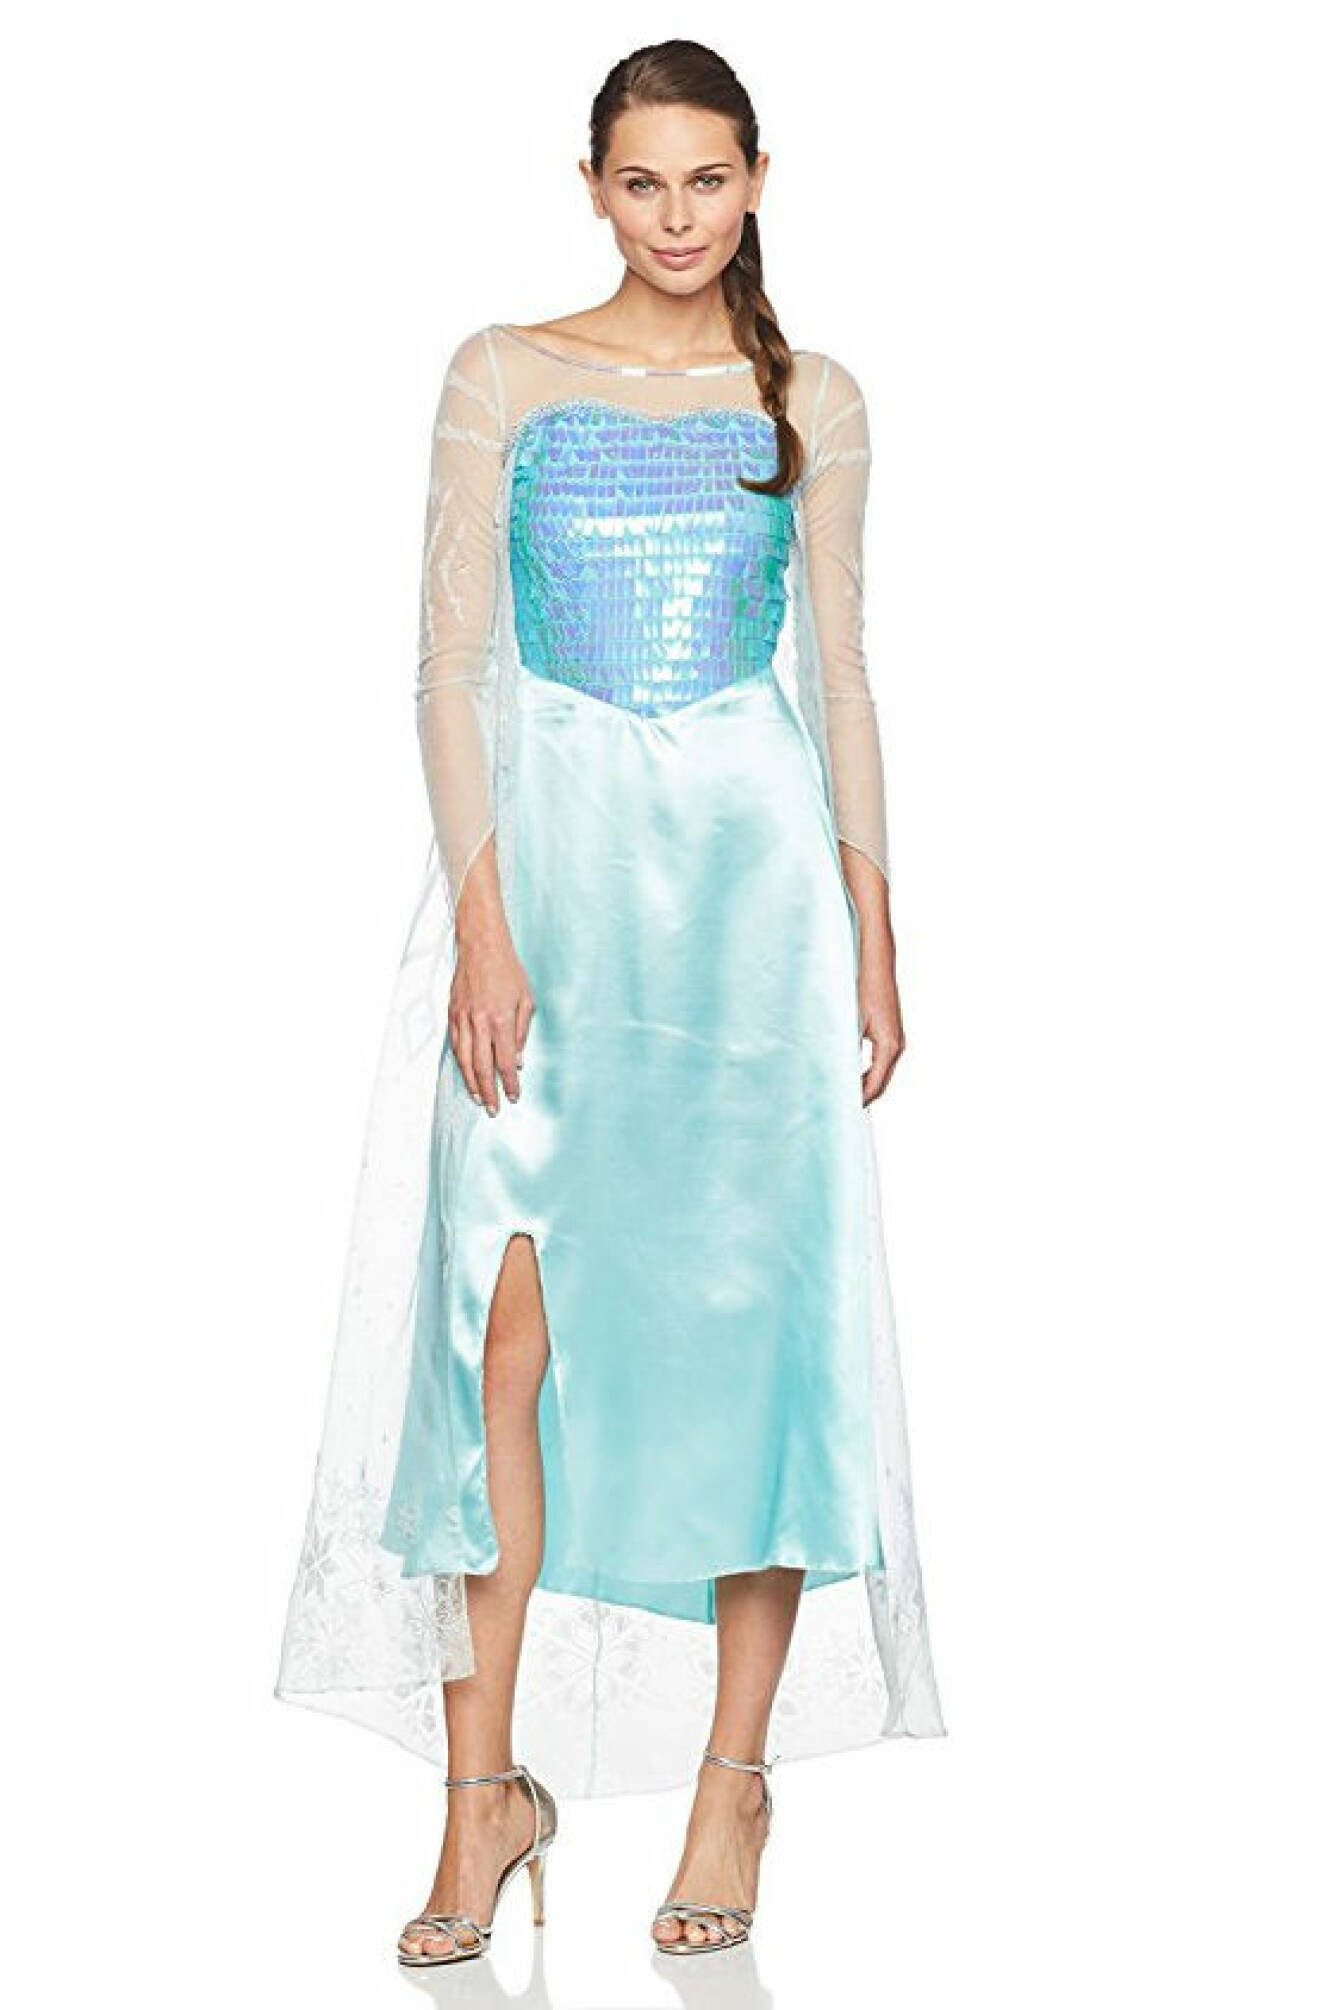 10. Låt barnasinnet leva och klä ut dig till Elsa i Frozen.